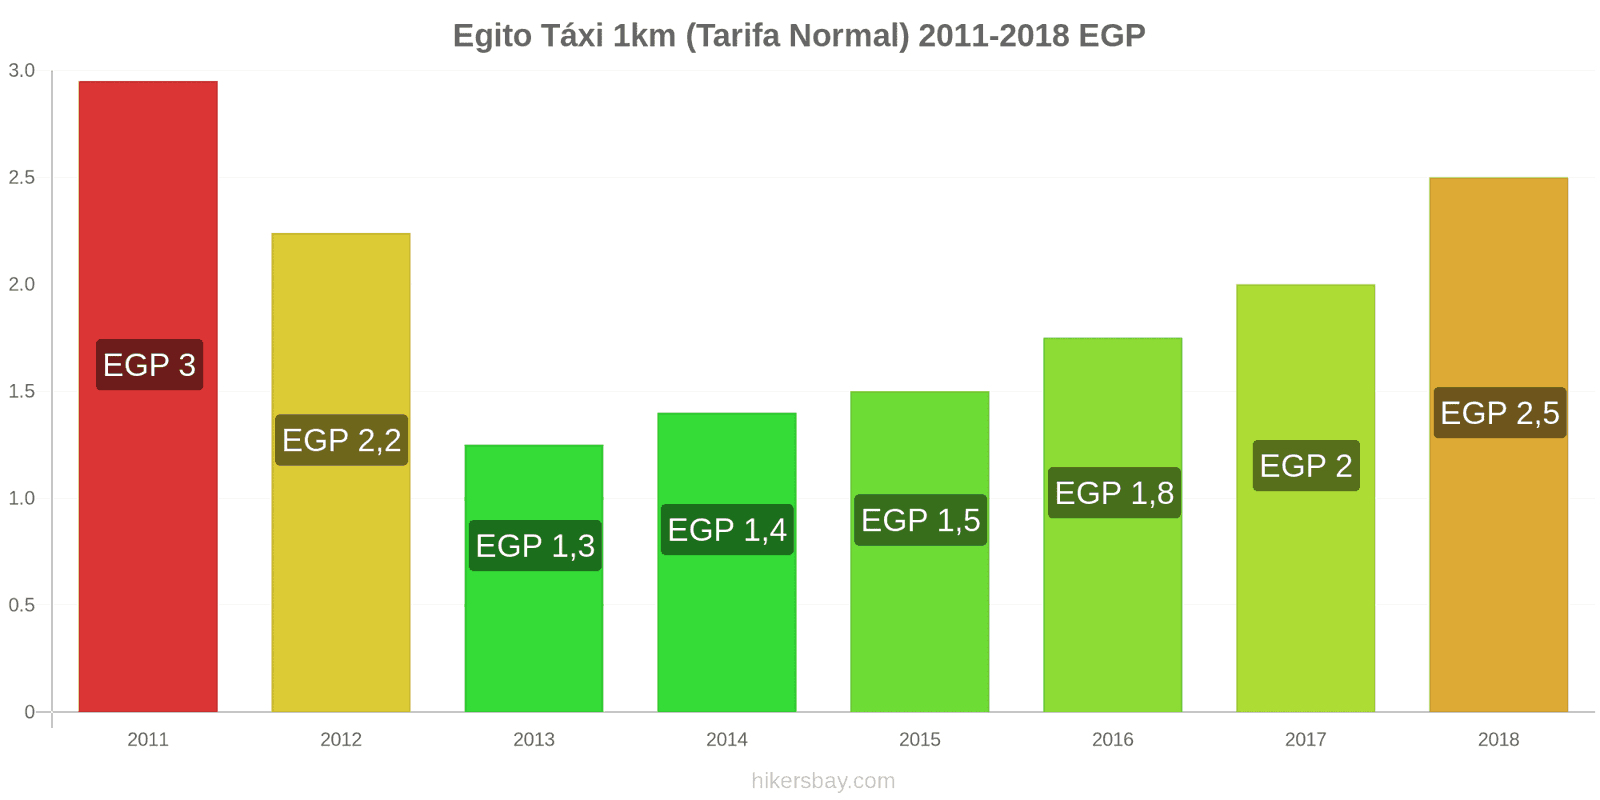 Egito mudanças de preços Táxi 1km (Tarifa Normal) hikersbay.com